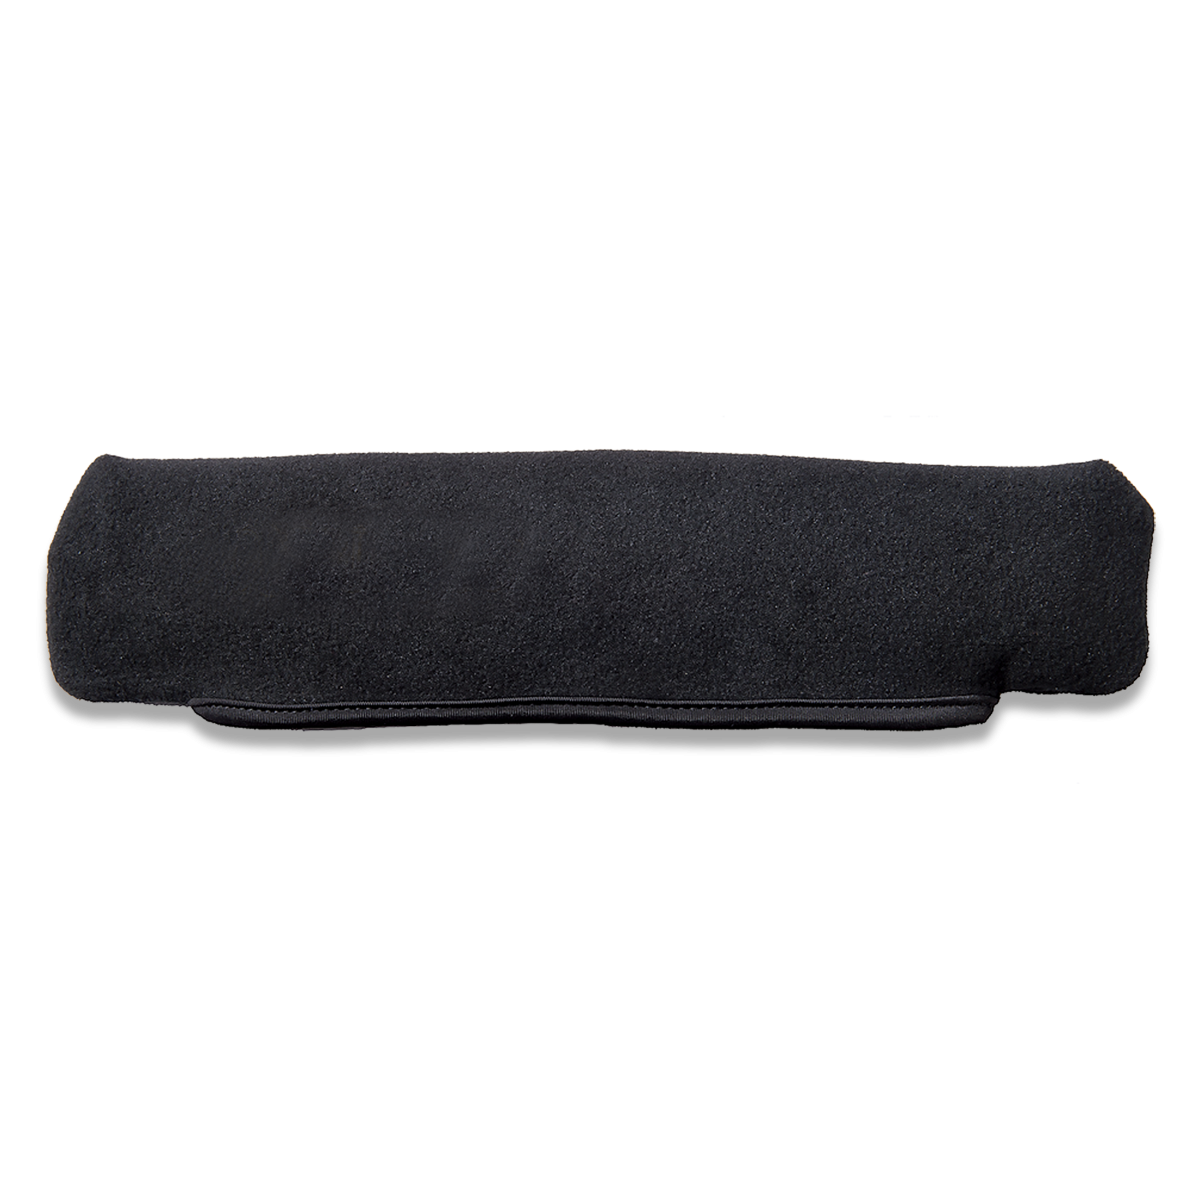 Чехол Burris Scope Covers для оптического прицела от 10,5 до 13 дюймов, объектив до 48 мм, размер Medium (626062)